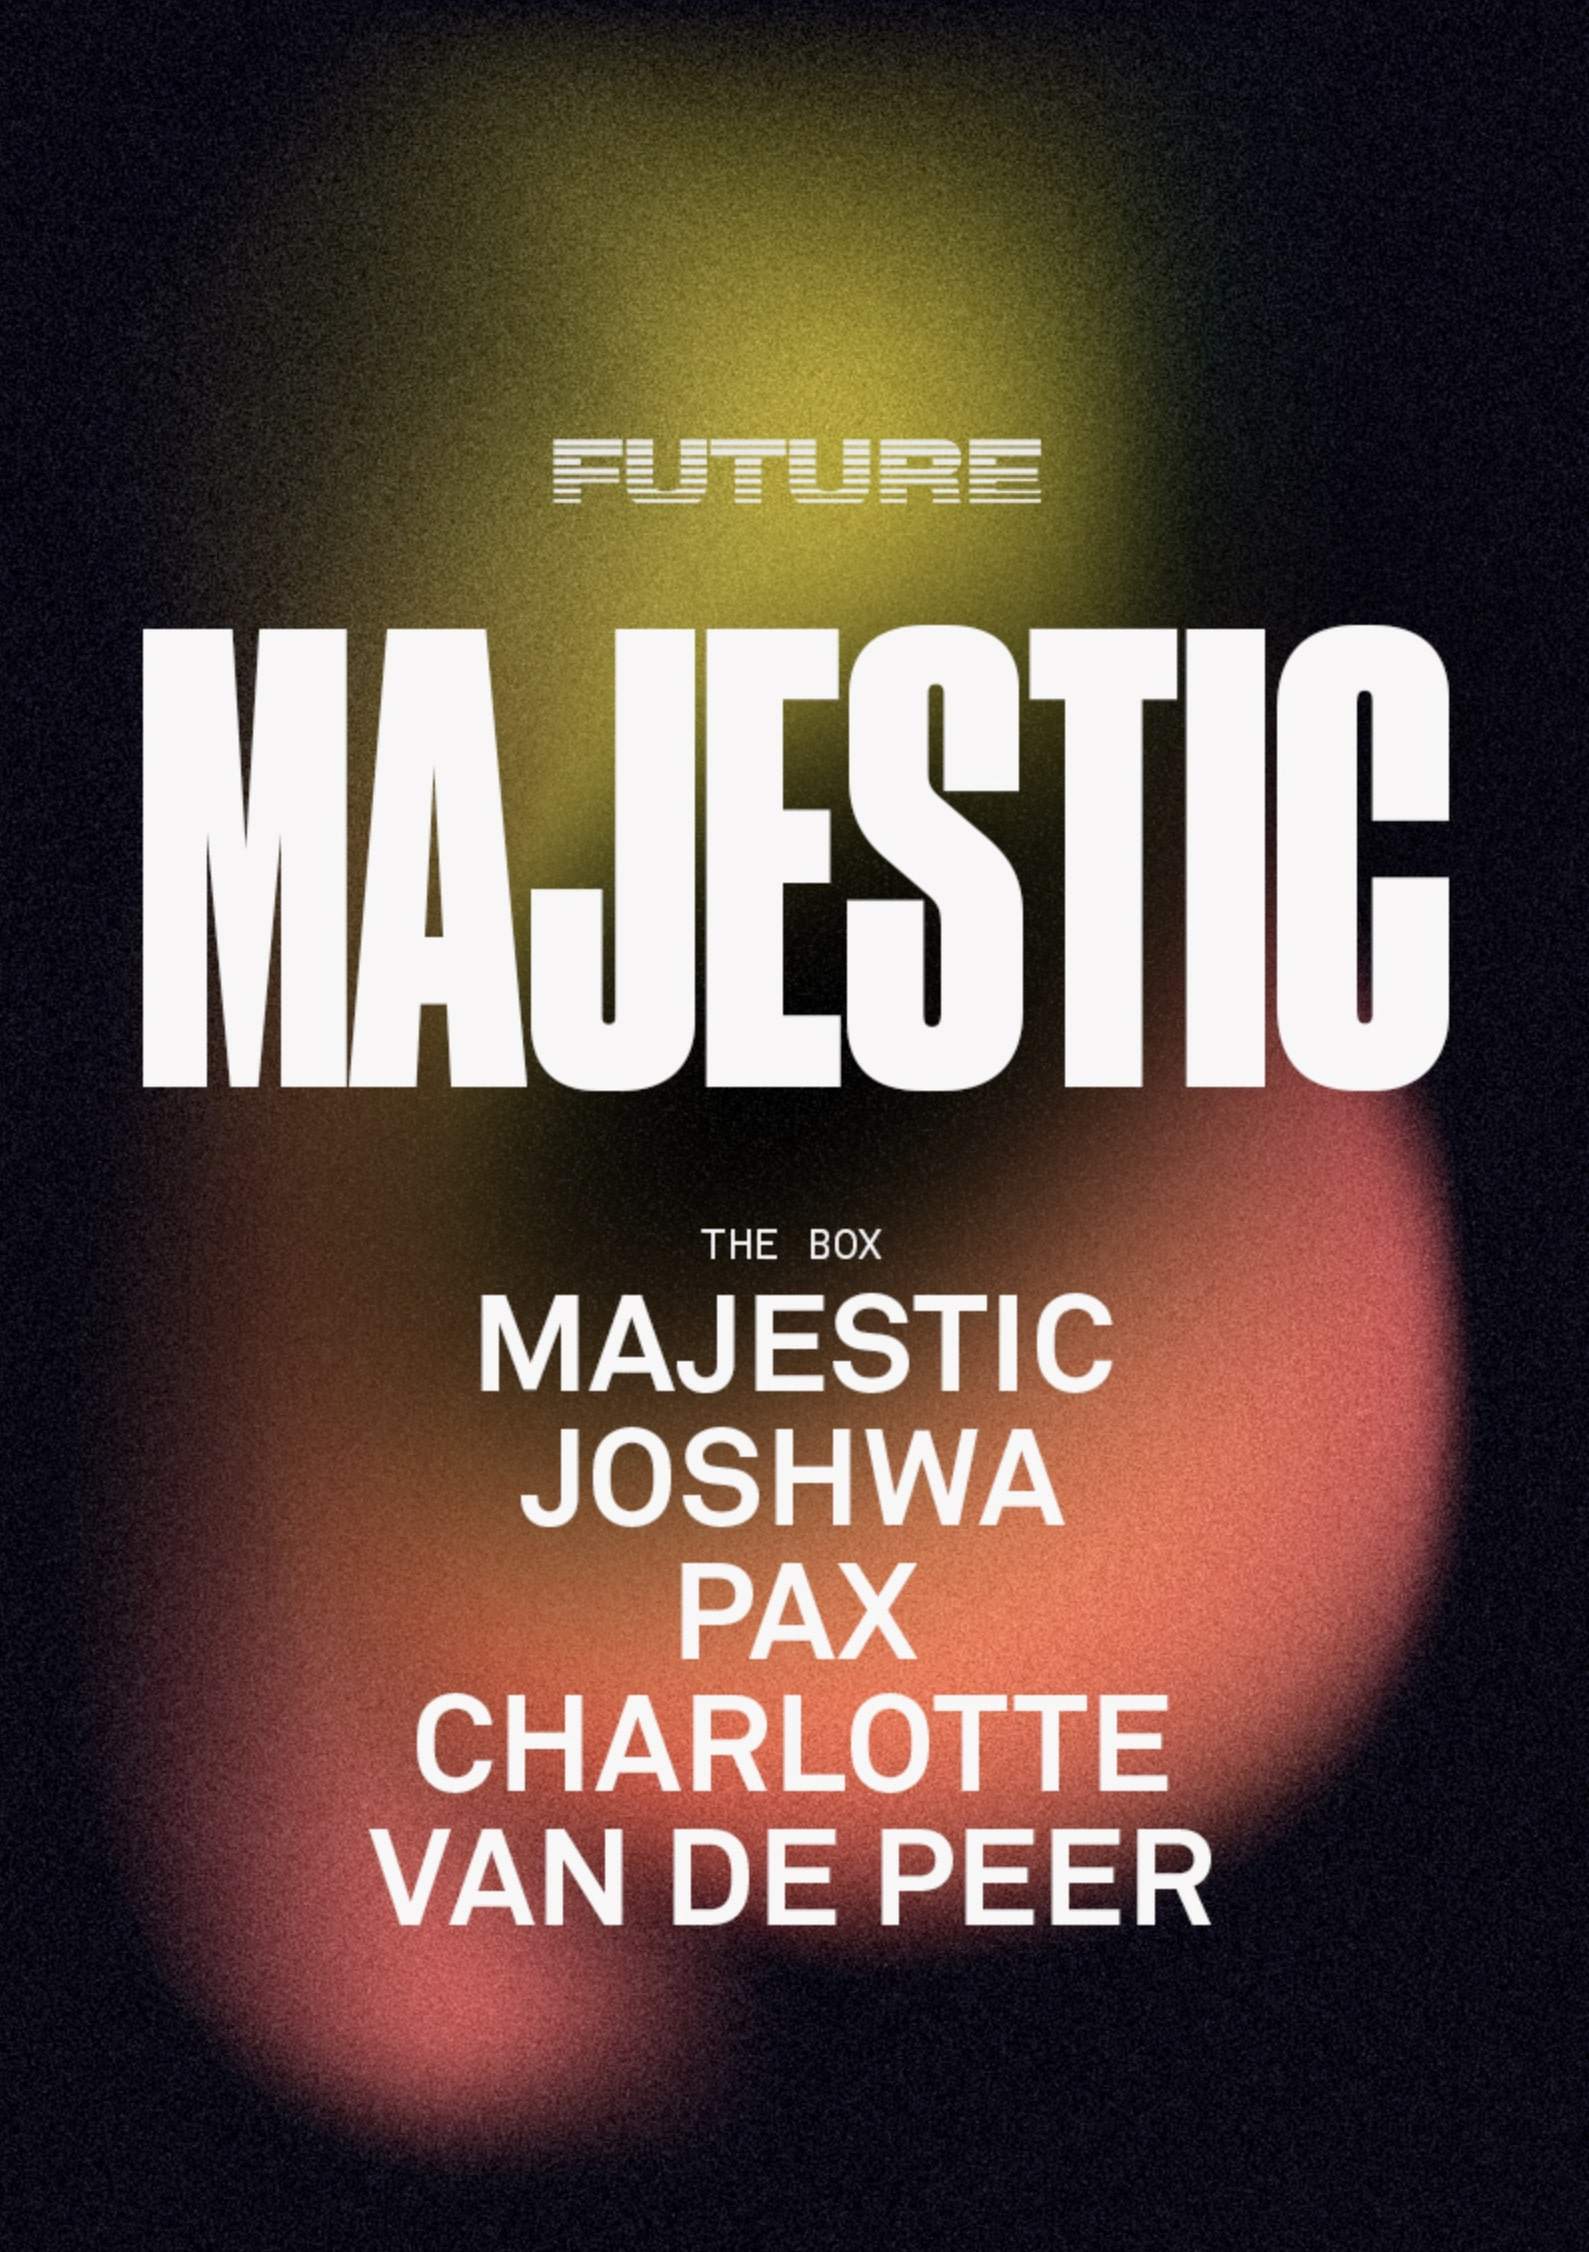 FUTURE presents Majestic - フライヤー表